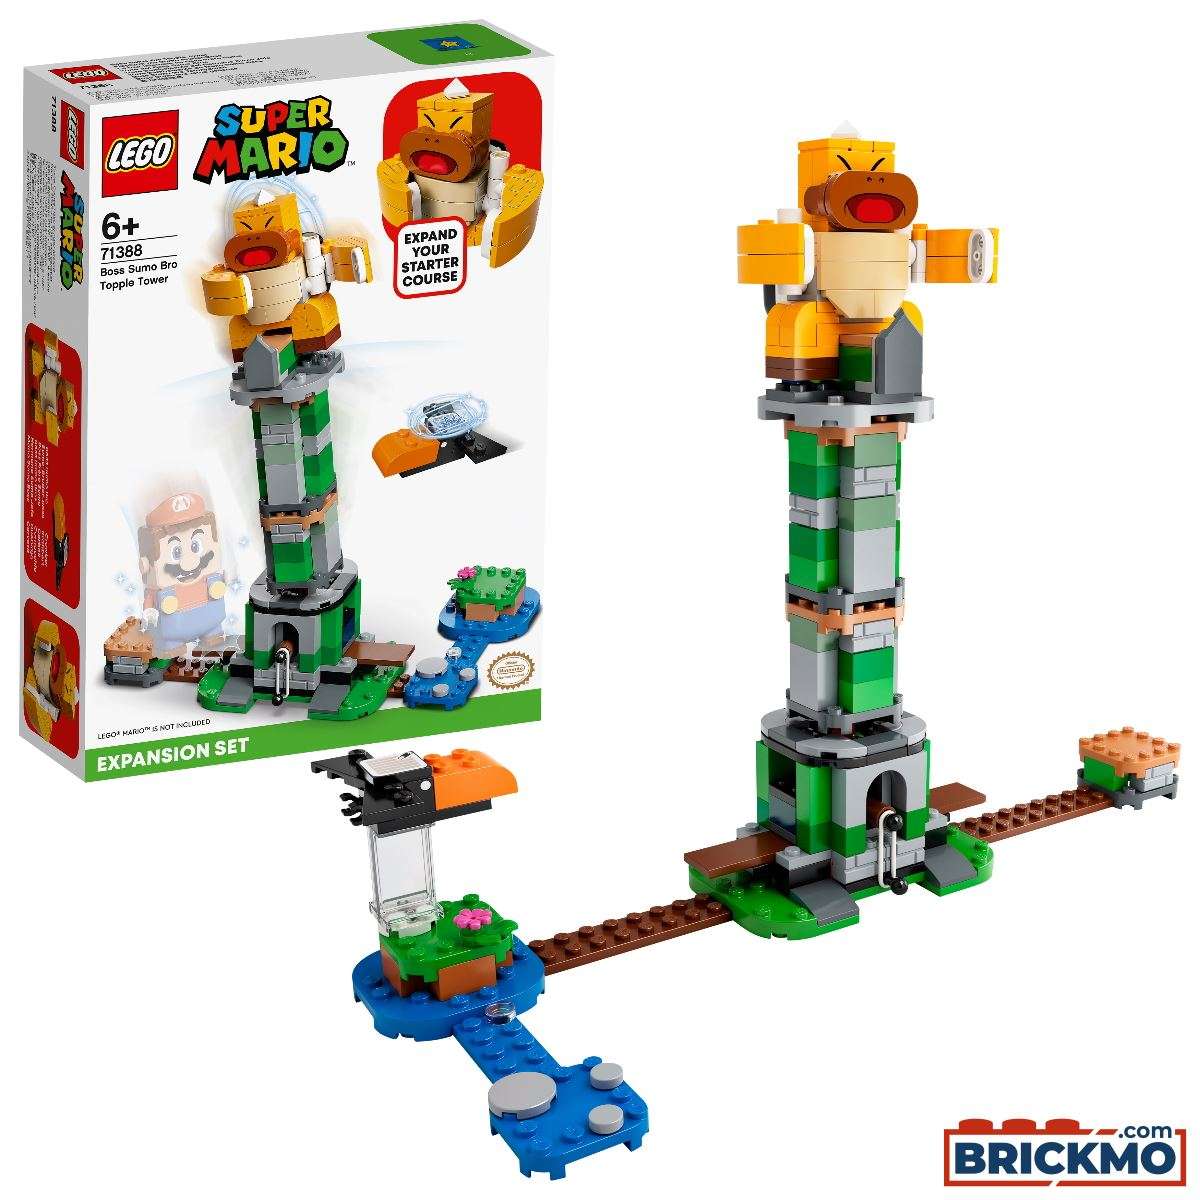 LEGO Super Mario 71388 Kippturm mit Sumo-Bruder-Boss – Erweiterungsset 71388